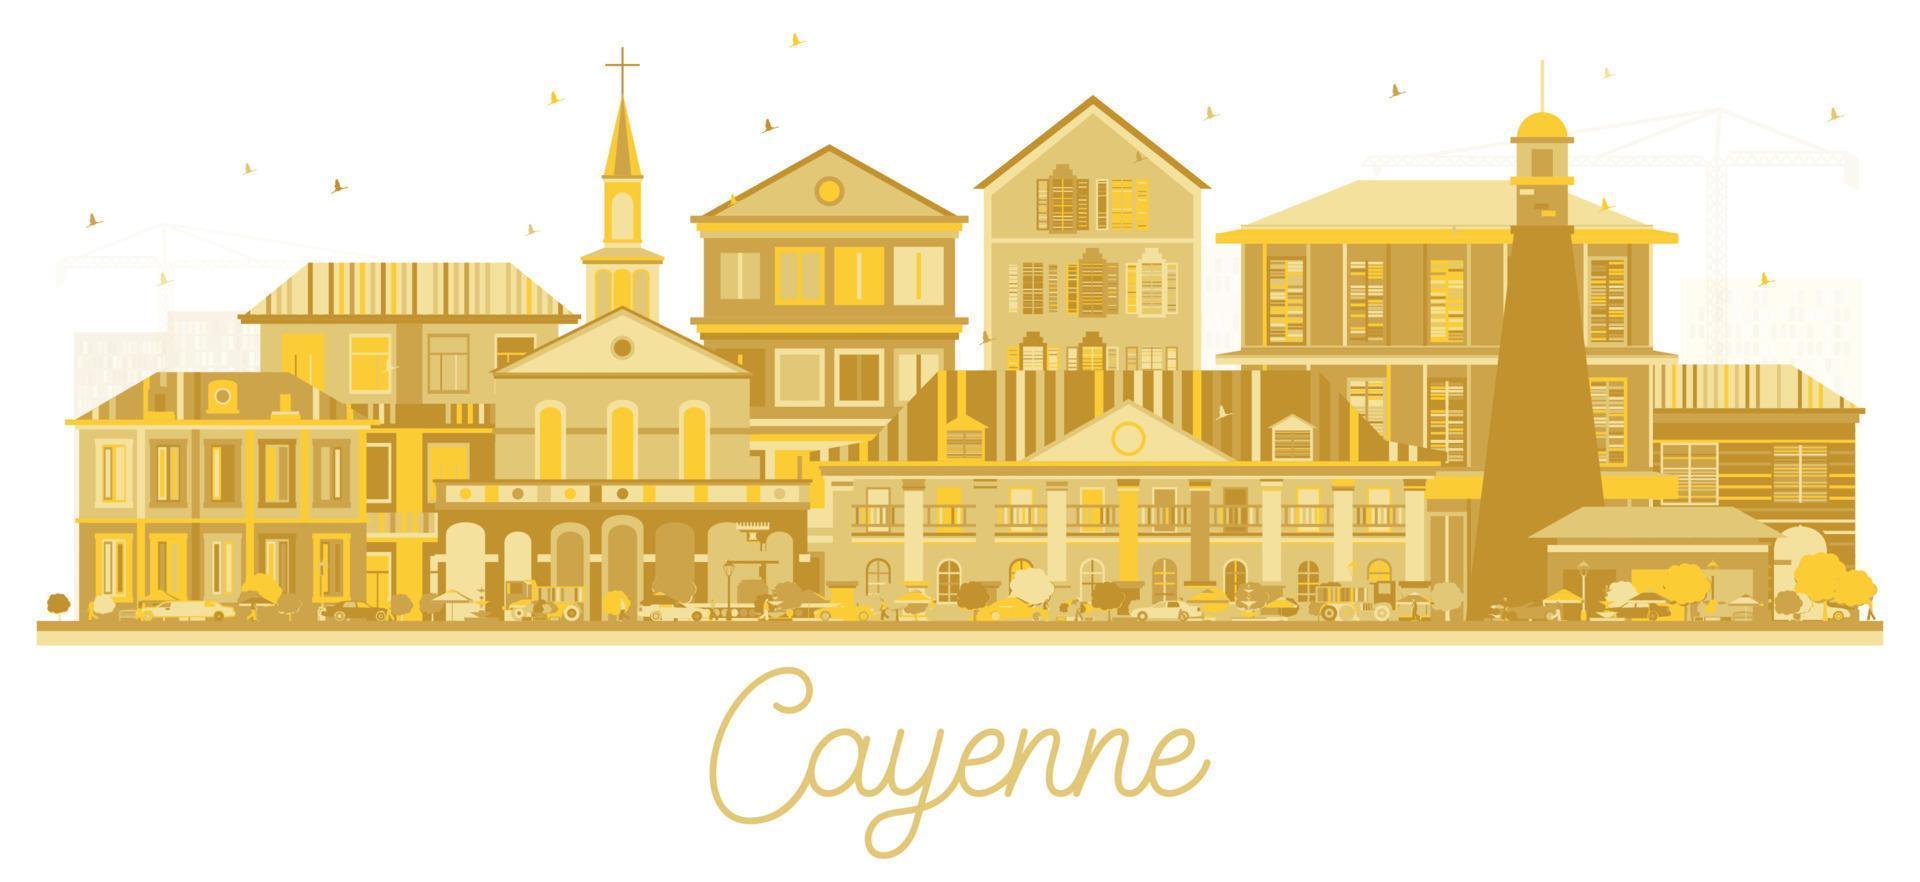 cayenne guyane française silhouette d'horizon de la ville avec des bâtiments dorés isolés sur blanc. vecteur